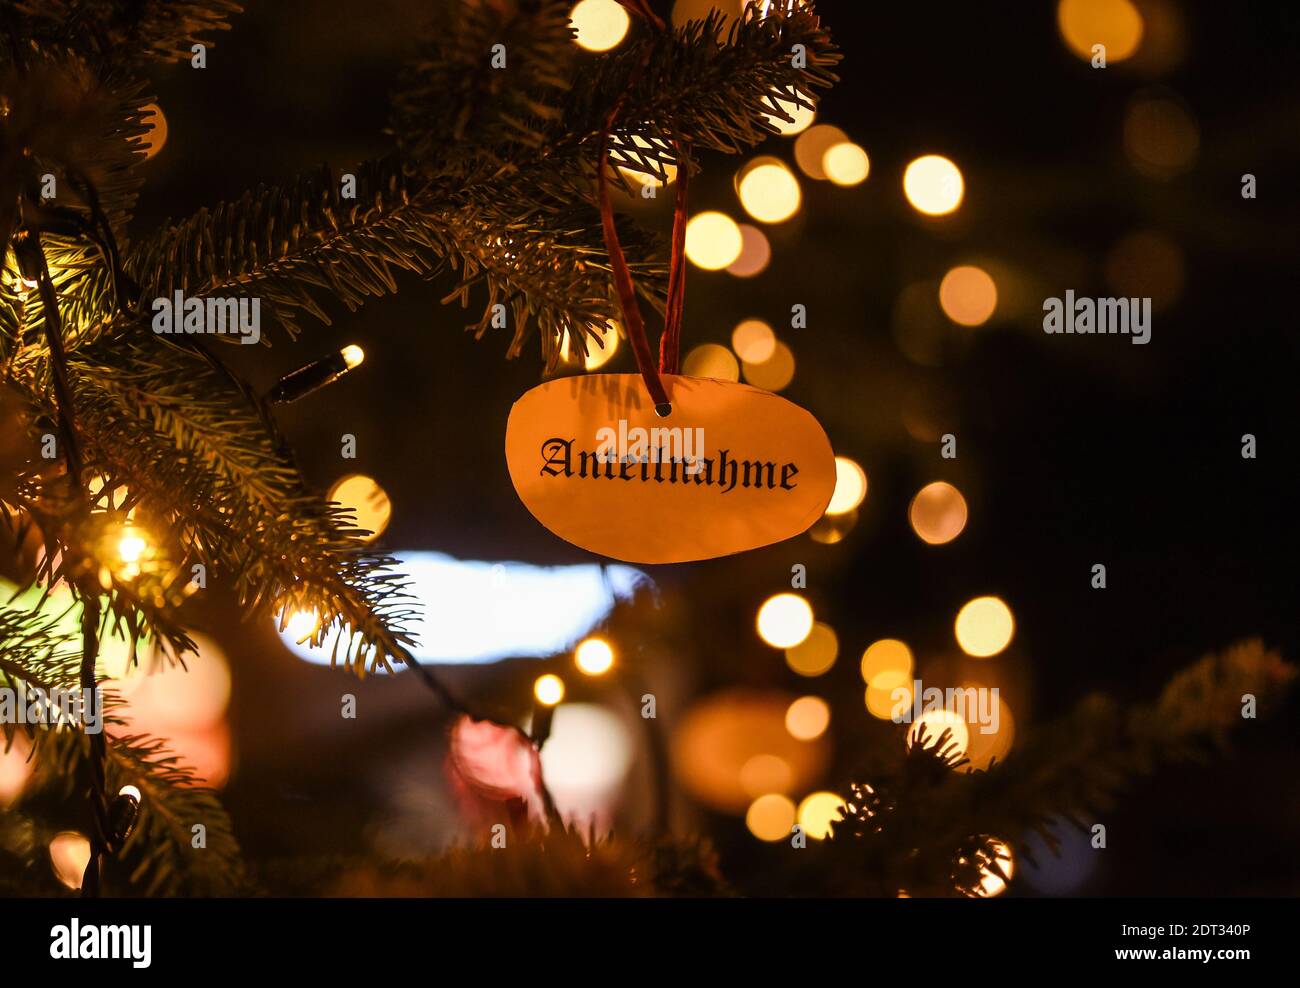 Berlino, Germania. 21 Dic 2020. Una carta con l'iscrizione 'Sympathy' è appesa su un albero di Natale sulla piazza del mercato di Friedrichshagen. Credit: Kira Hofmann/dpa-Zentralbild/dpa/Alamy Live News Foto Stock